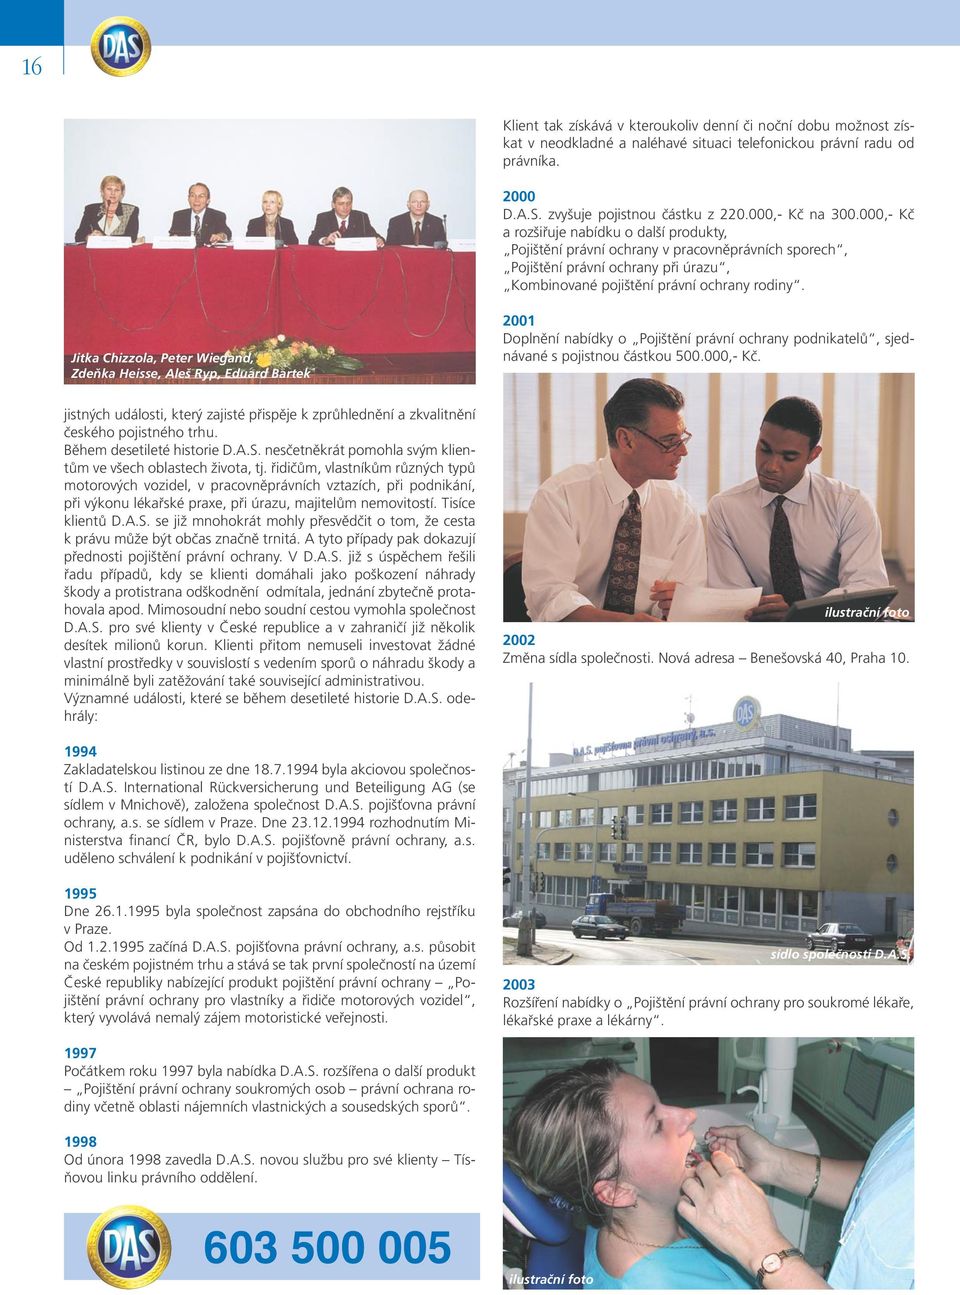 Jitka Chizzola, Peter Wiegand, Zdeňka Heisse, Aleš Ryp, Eduard Bartek 2001 Doplnění nabídky o Pojištění právní ochrany podnikatelů, sjednávané s pojistnou částkou 500.000,- Kč.